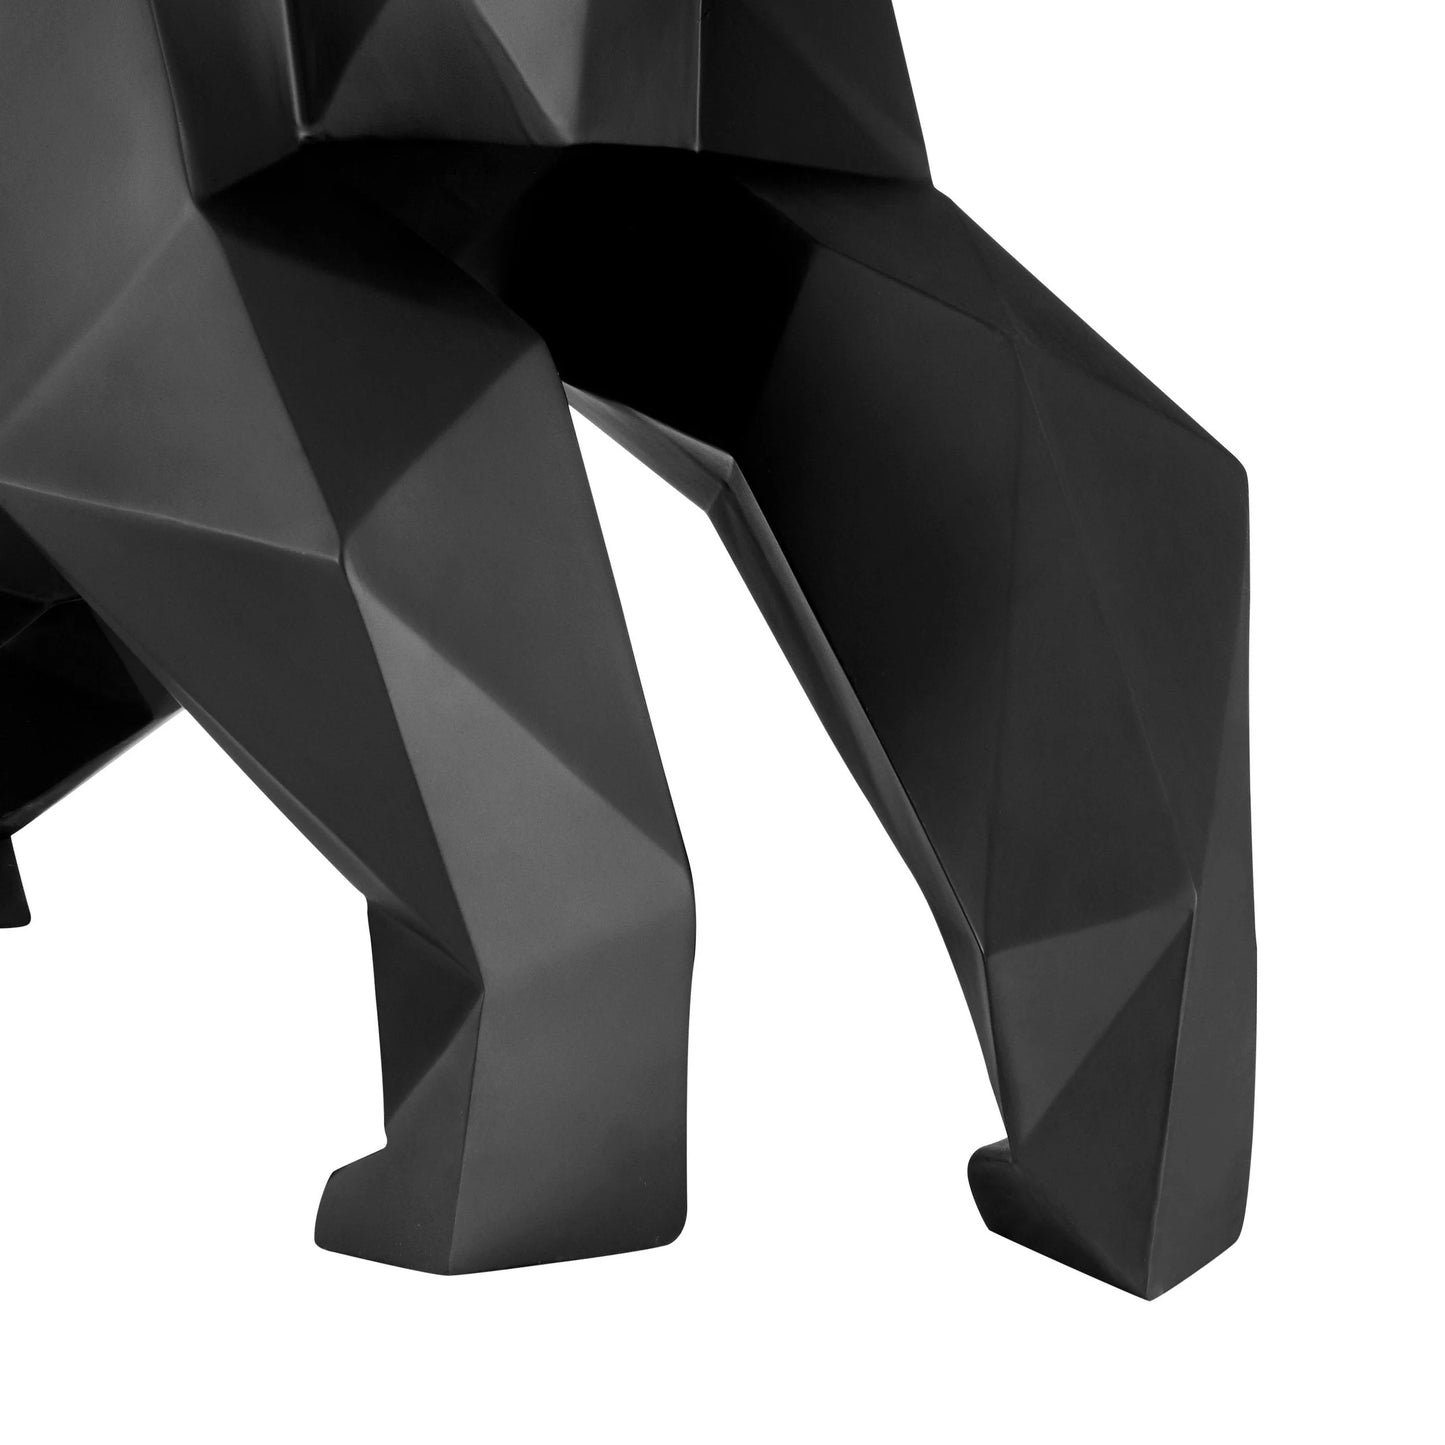 Finesse Decor Geometric Ape Sculpture Matte Black 4